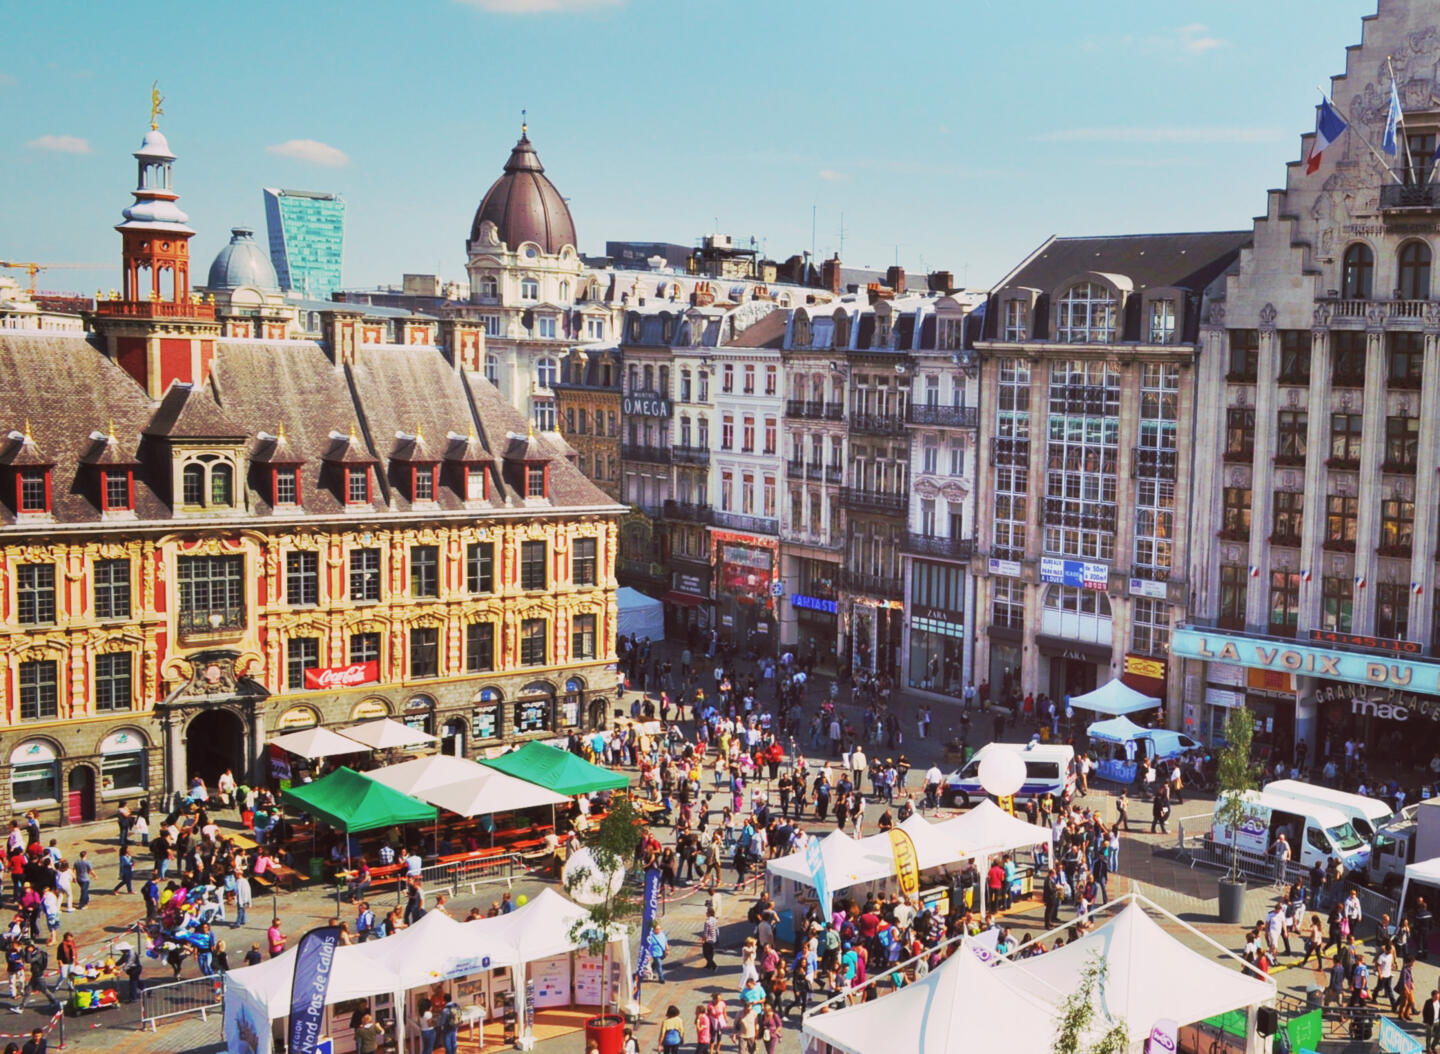 Place animée pendant la Braderie de Lille, foisonnante de stands de marché et de foule, avec des bâtiments historiques en arrière-plan, à proximité des appart'hôtels Appart'City.